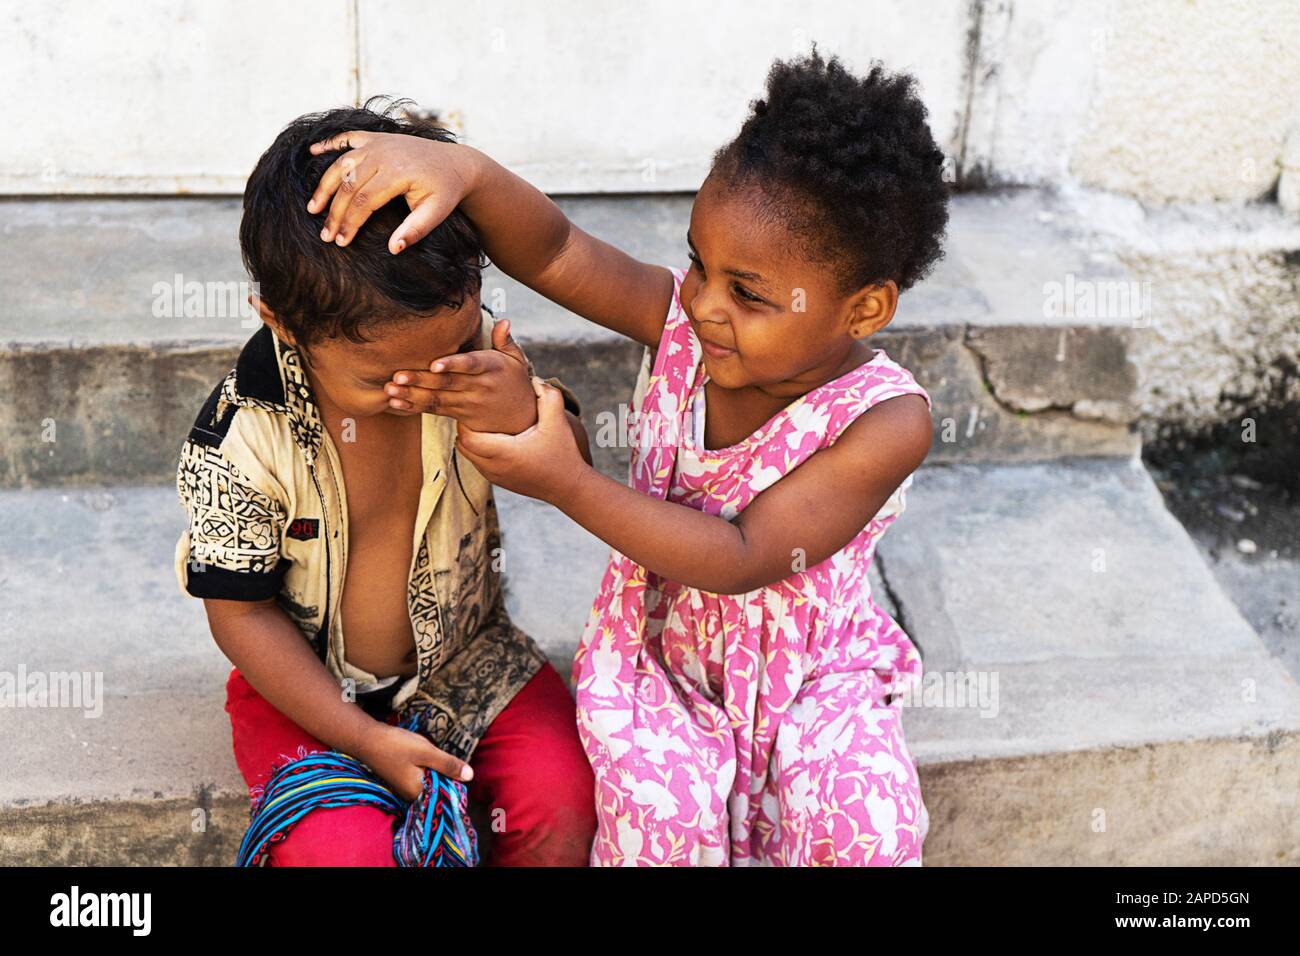 Tanzania, Zanzibar - 21 gennaio 2020: Bambini africani che giocano e si propongono per una fotografia. Foto Stock